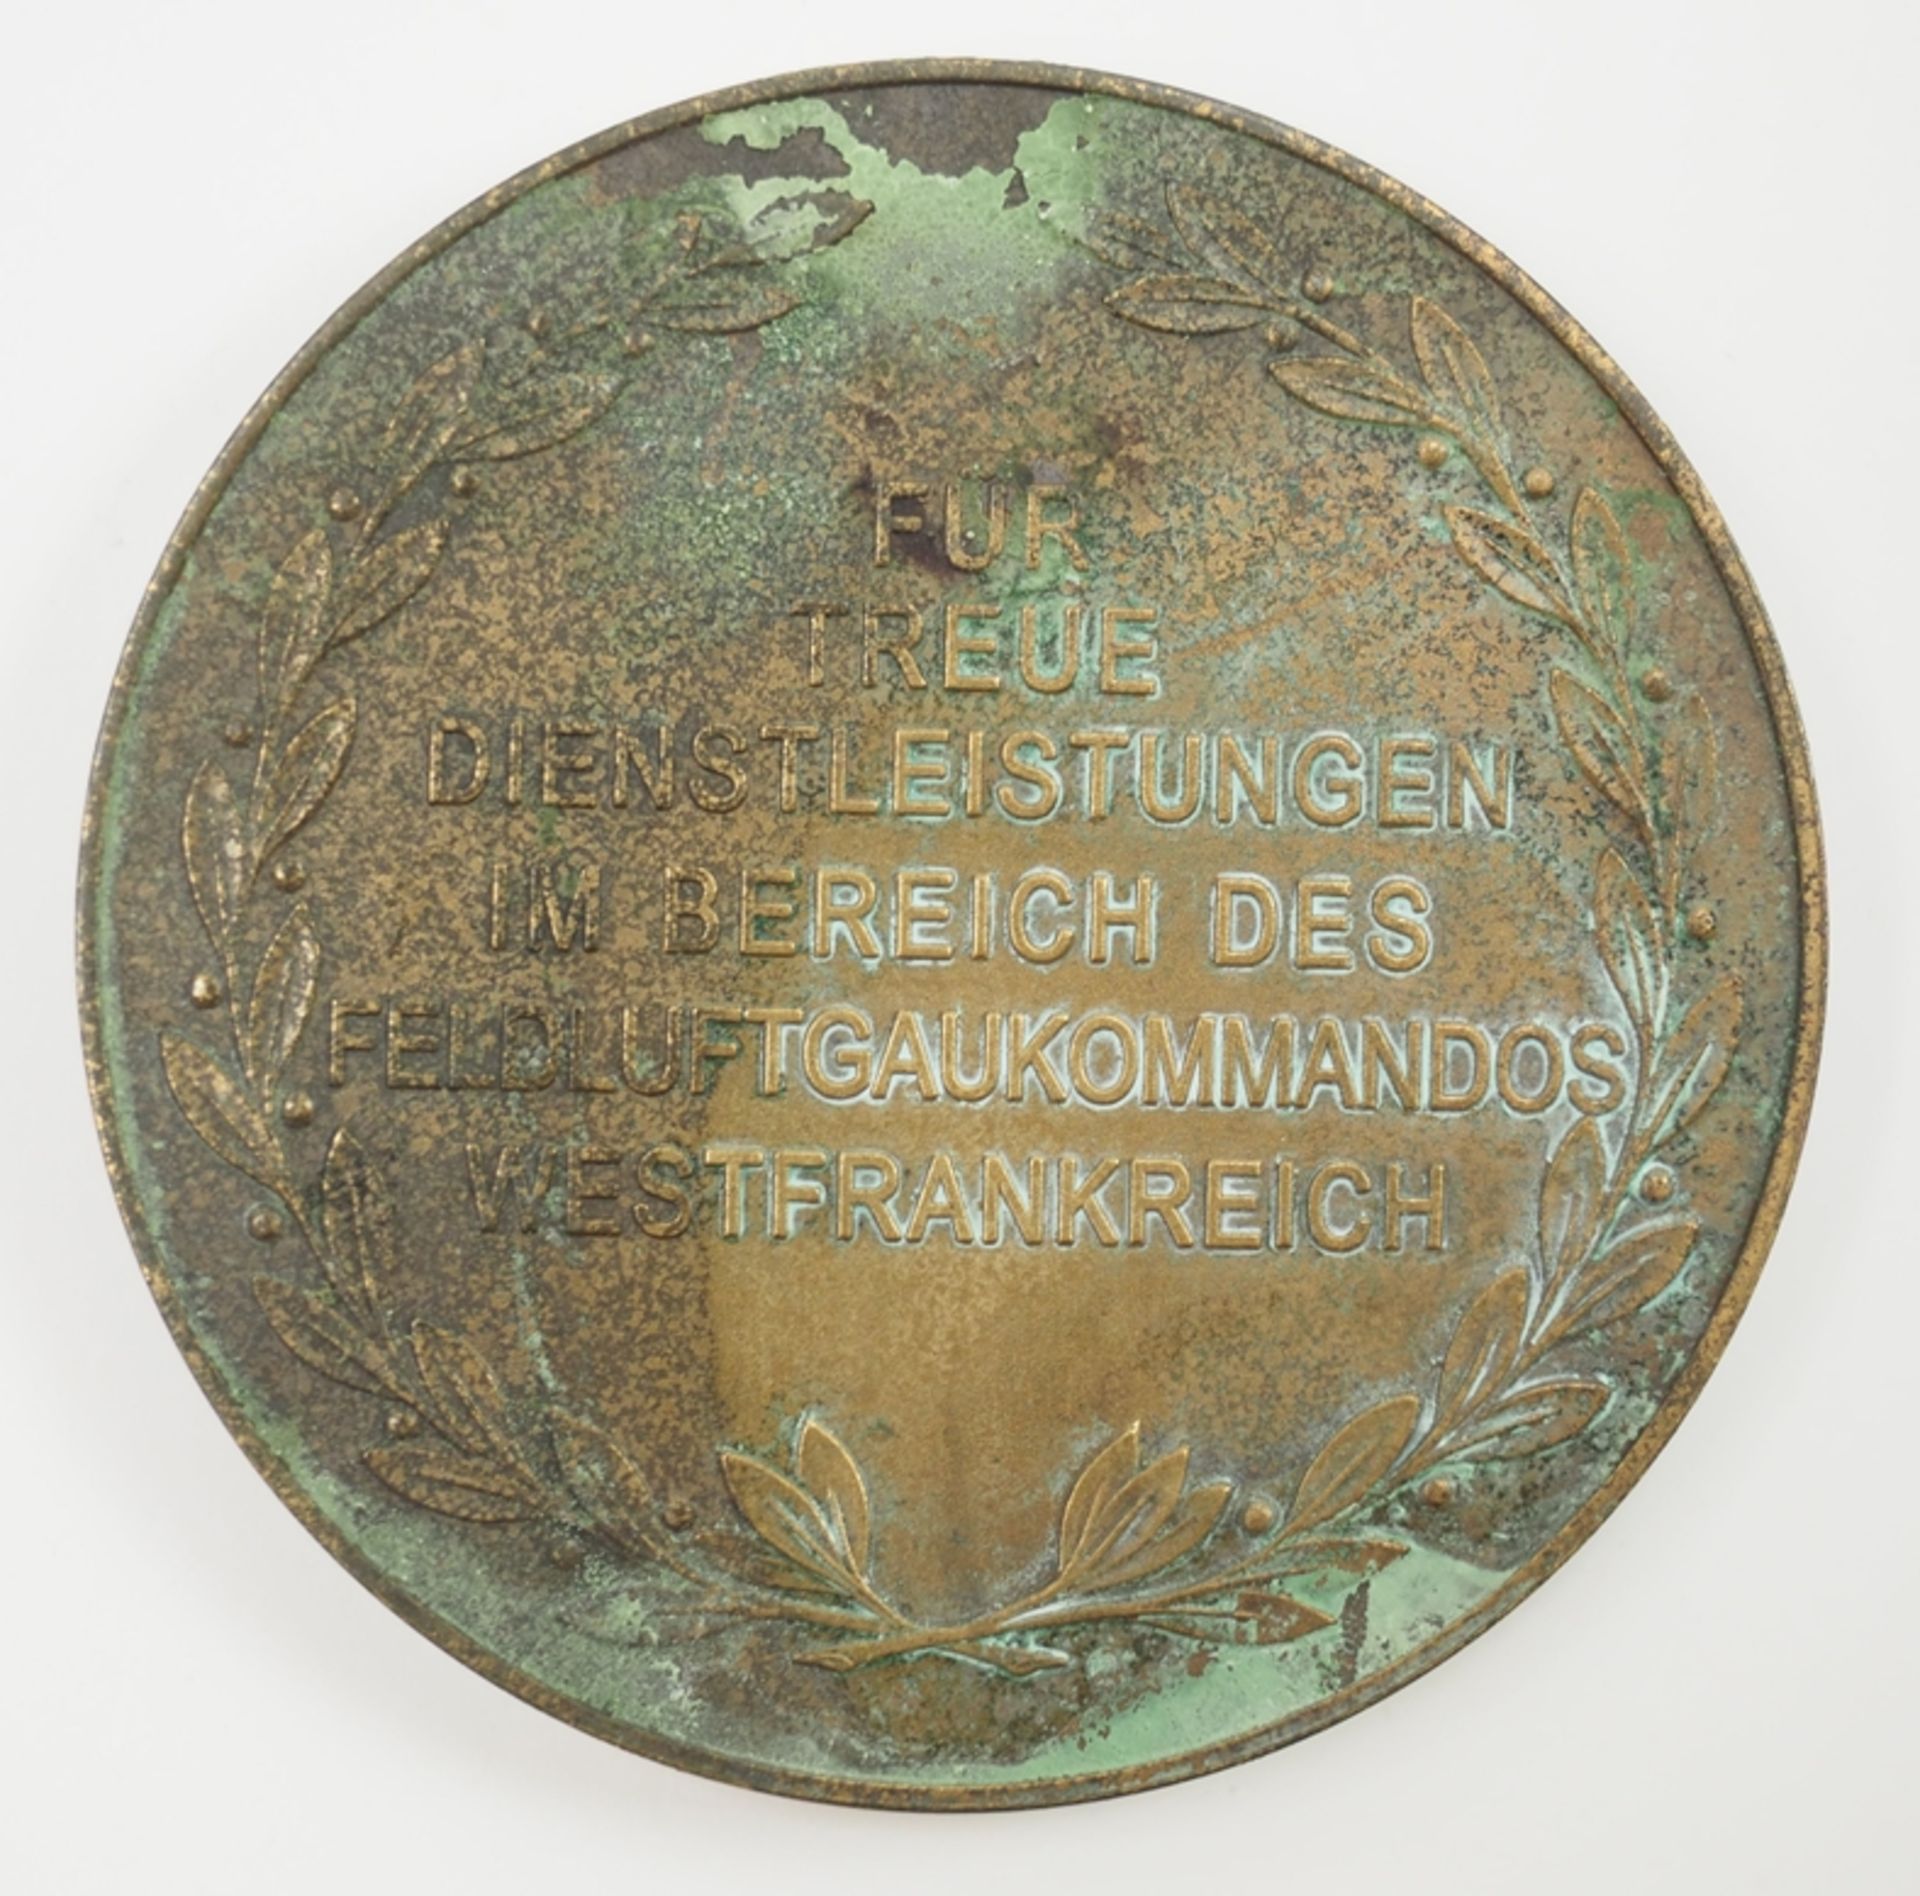 Medaille für Treue Dienstleistungen im Bereich des Feldluftgaukommando Westfrankreich. - Image 2 of 2